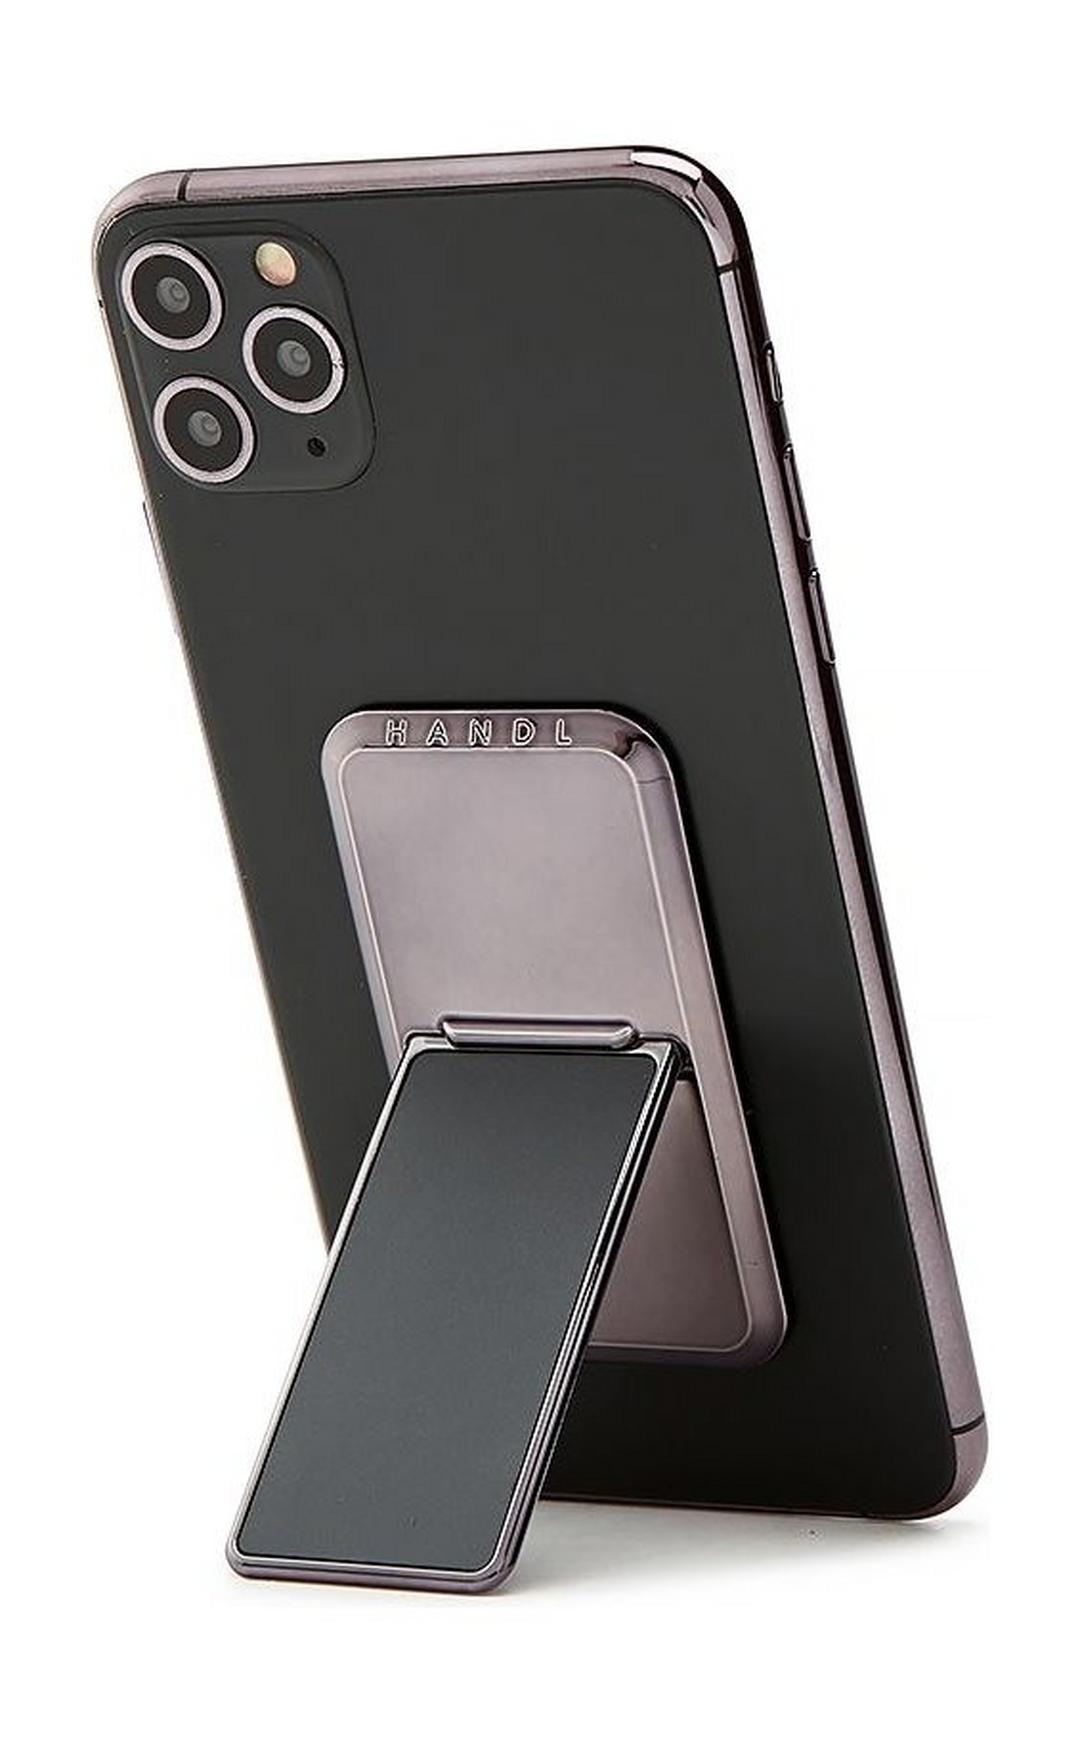 HANDLstick Solid Electroplated Smartphone Holder - Space Grey